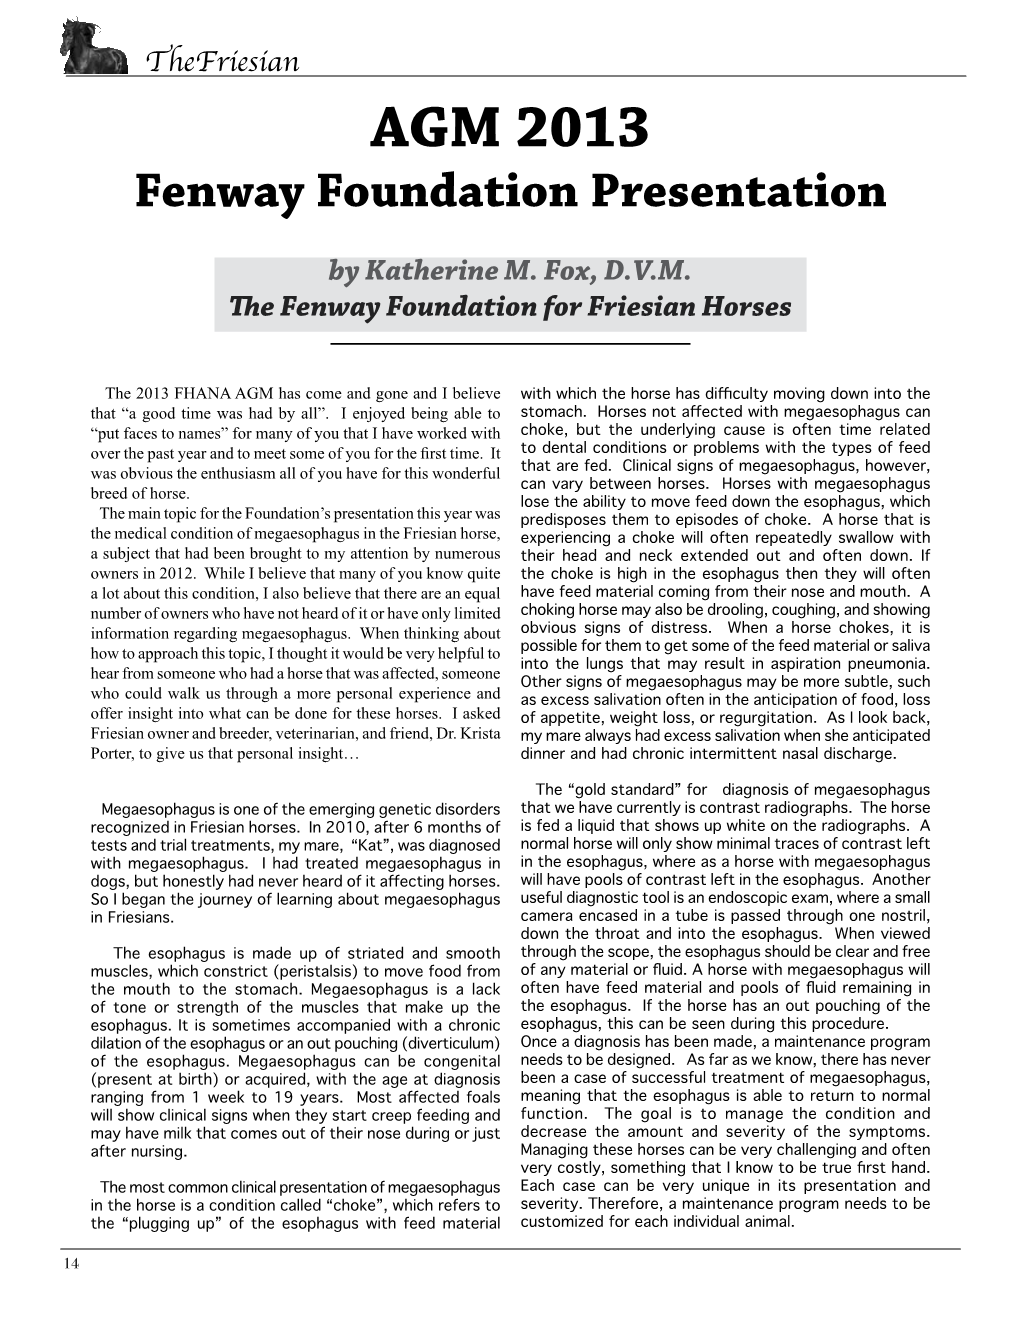 AGM 2013 Fenway Foundation Presentation